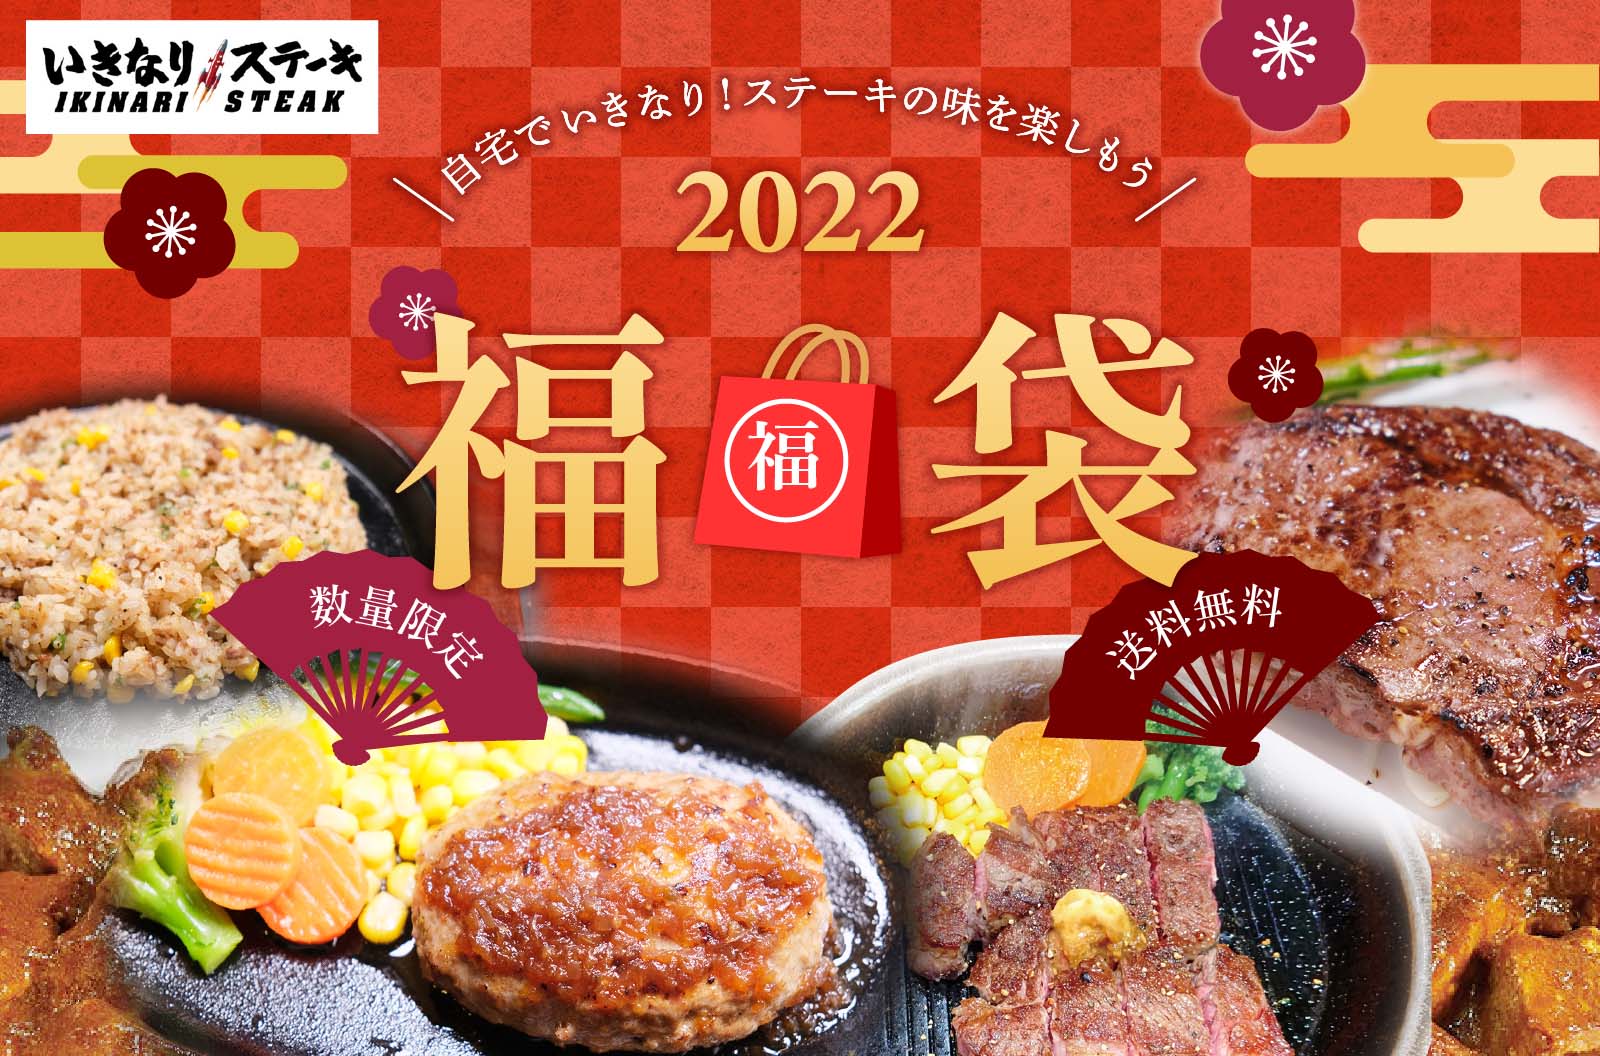 「いきなり!ステーキ」が2022年豪華福袋を販売！お正月は豪勢ステーキで決まり！